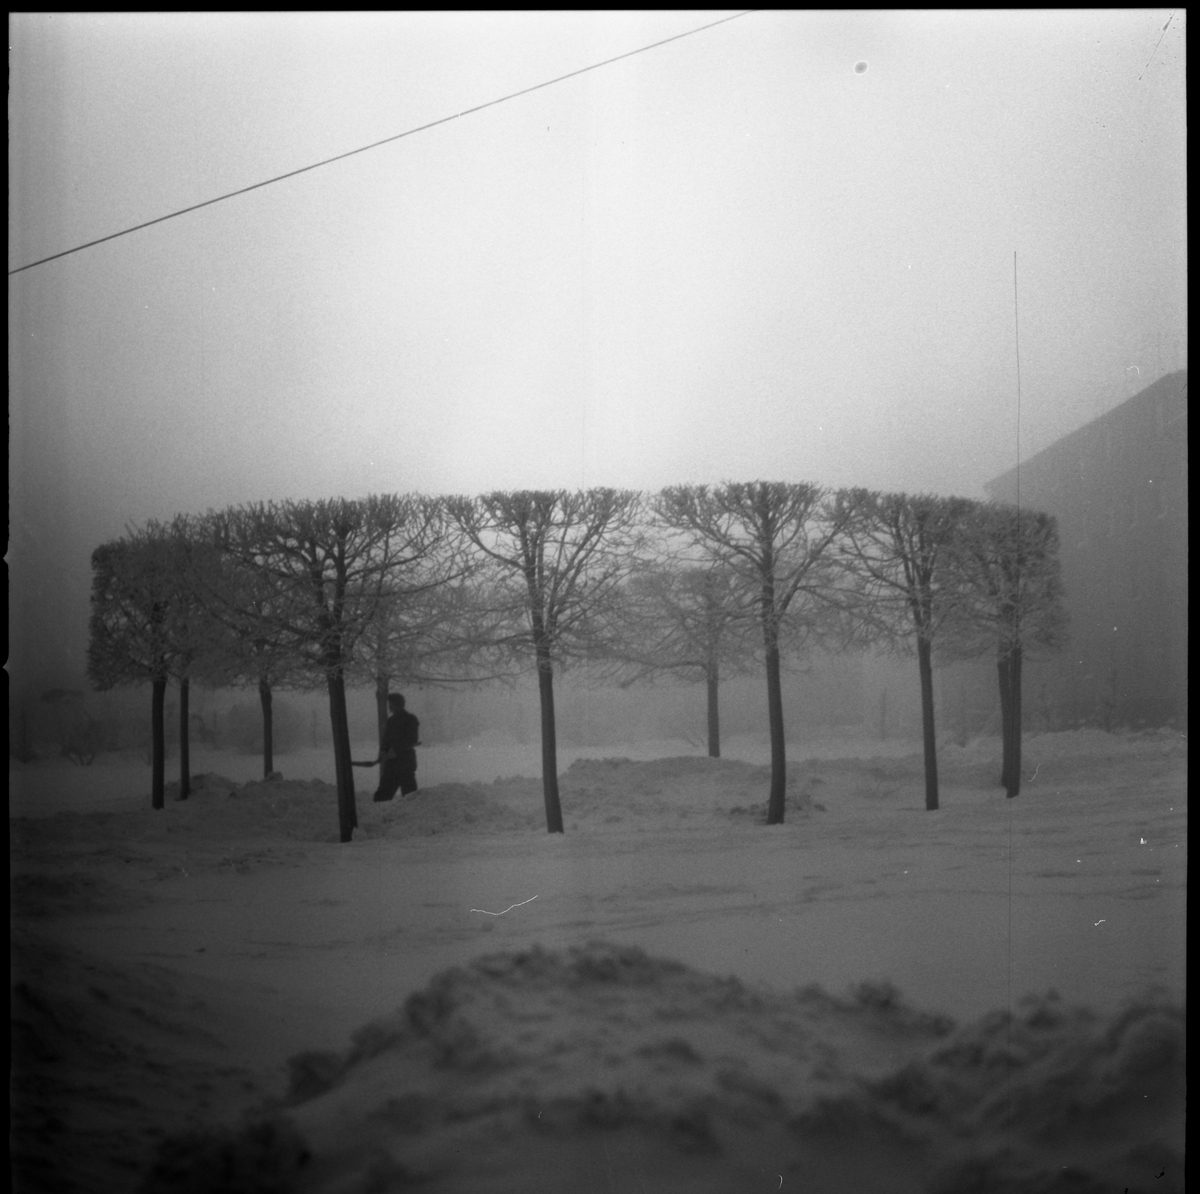 Snötäckt park med träd i cirkelformation, Strandbodkilen, Uppsala 1961